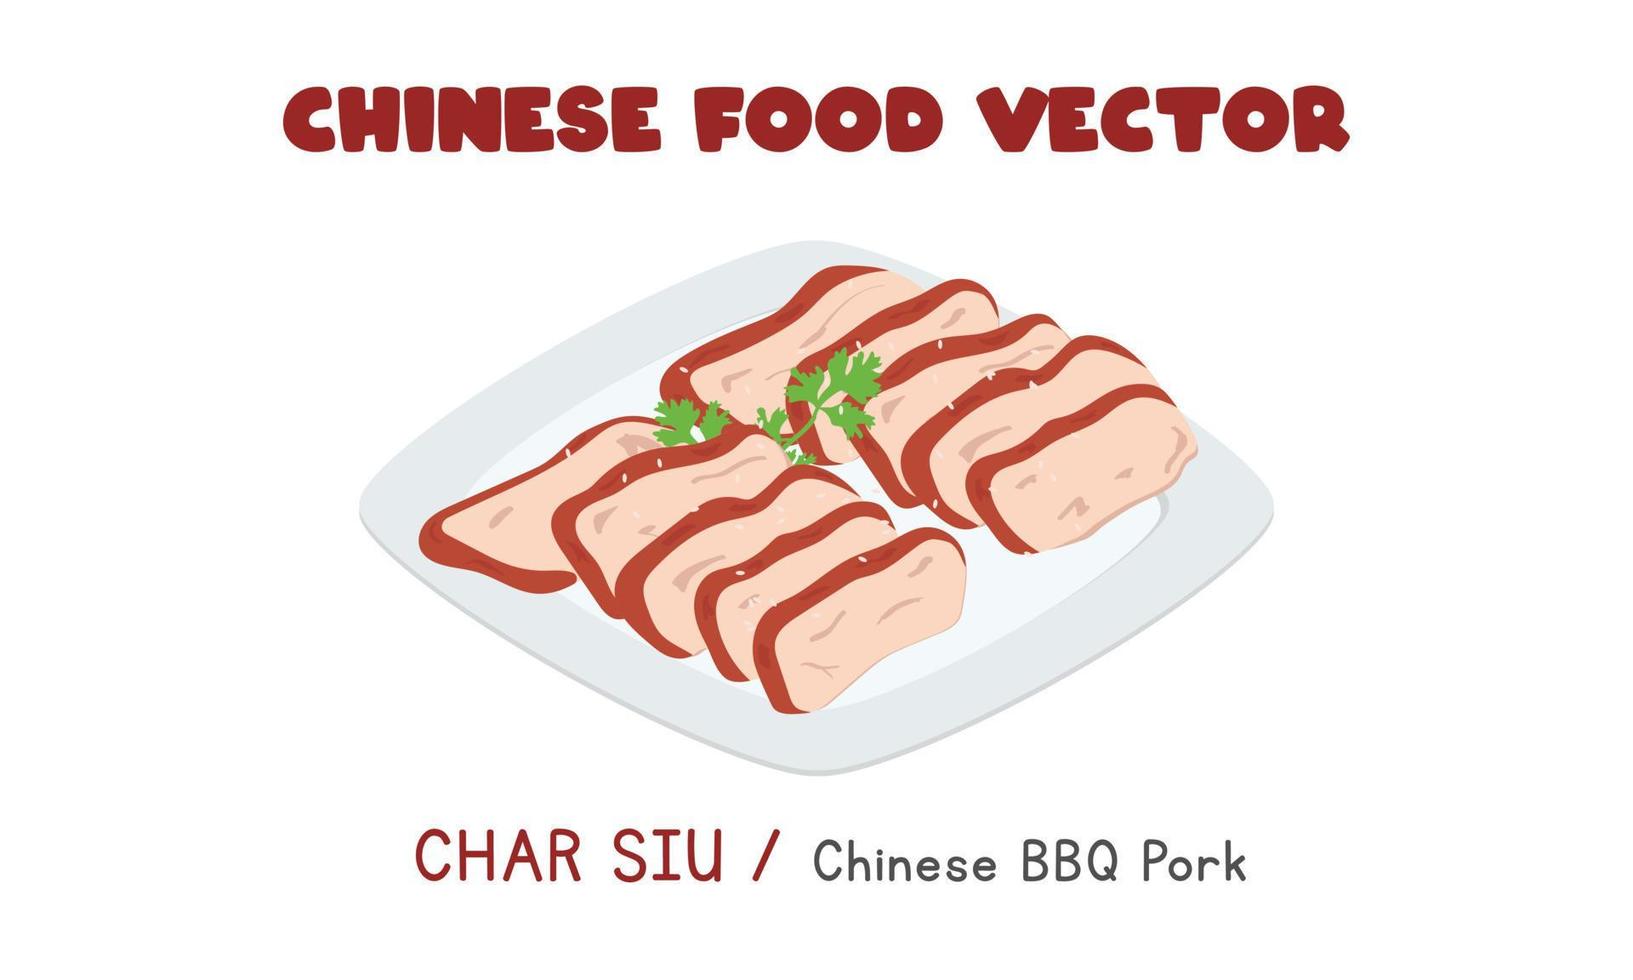 chinesischer char siu - flache vektordesignillustration des chinesischen bbq-schweinefleischs, clipart-karikaturart. asiatisches Essen. chinesische Küche. chinesisches Essen vektor